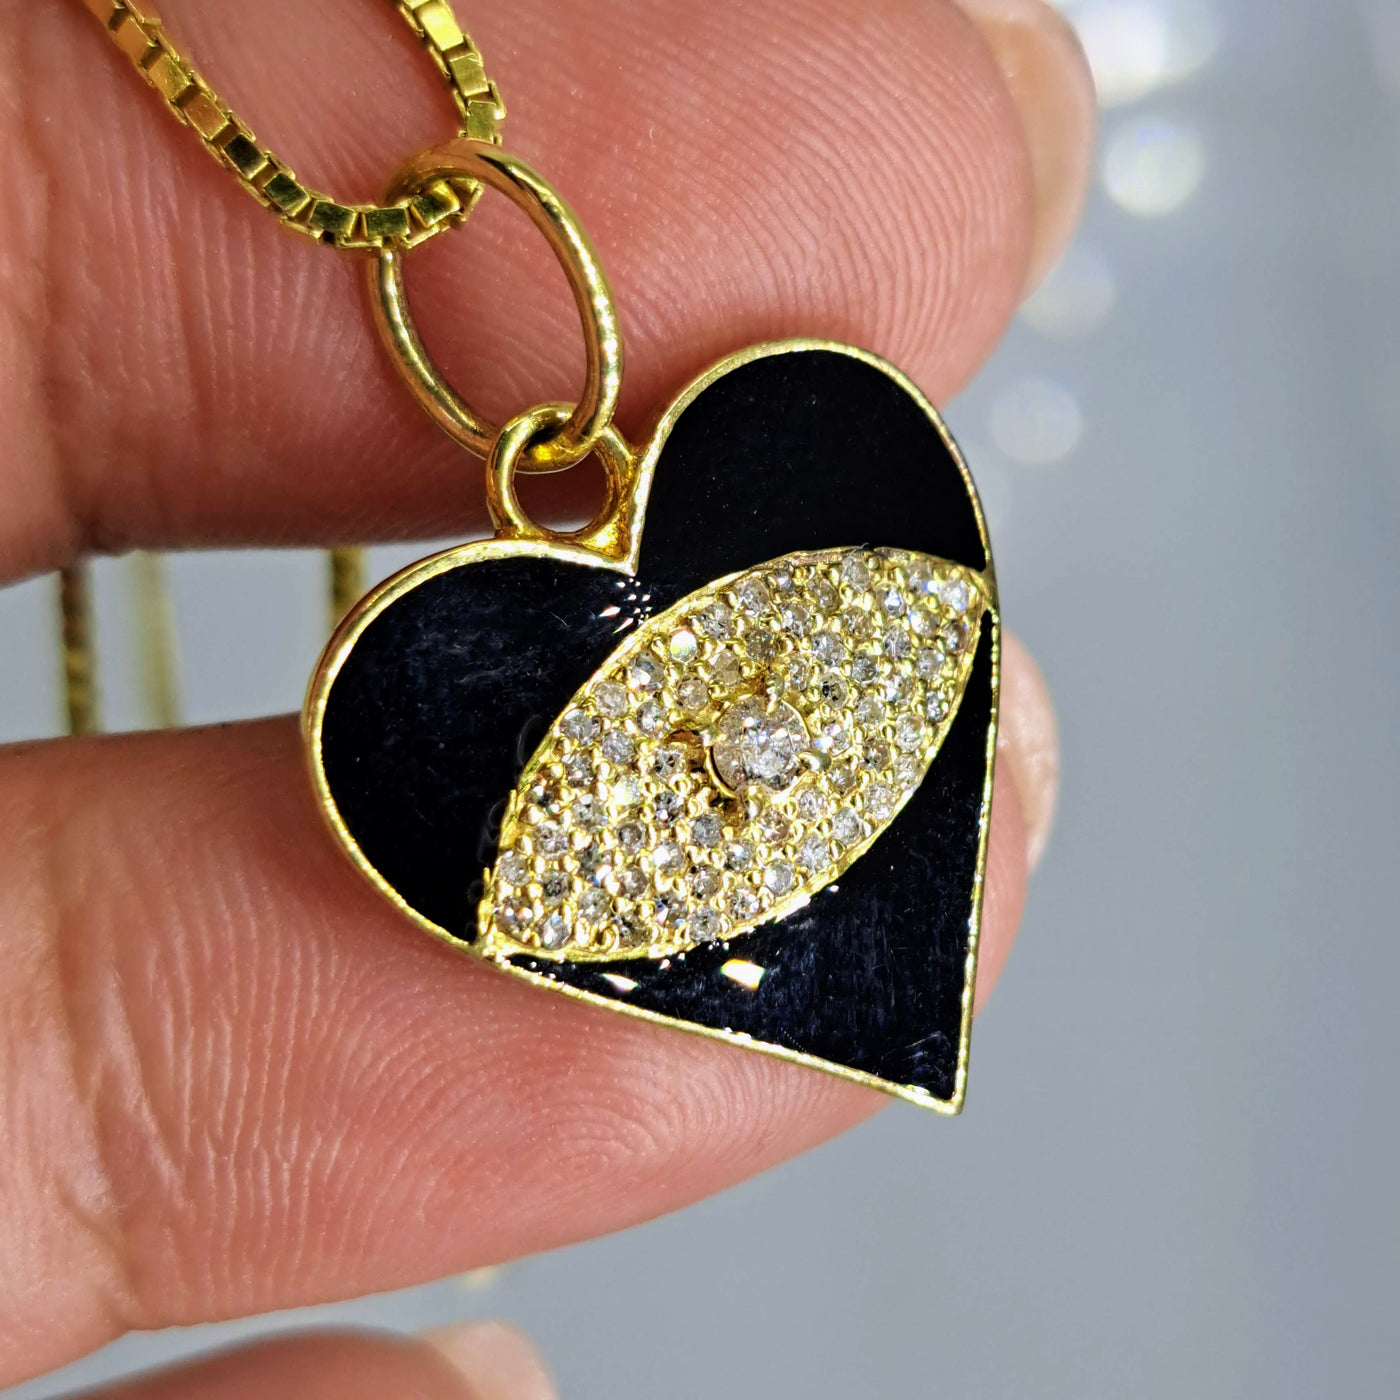 "Black Heart Matters" 16" Pendant Necklace - Diamonds, Enamel, 18k Sterling